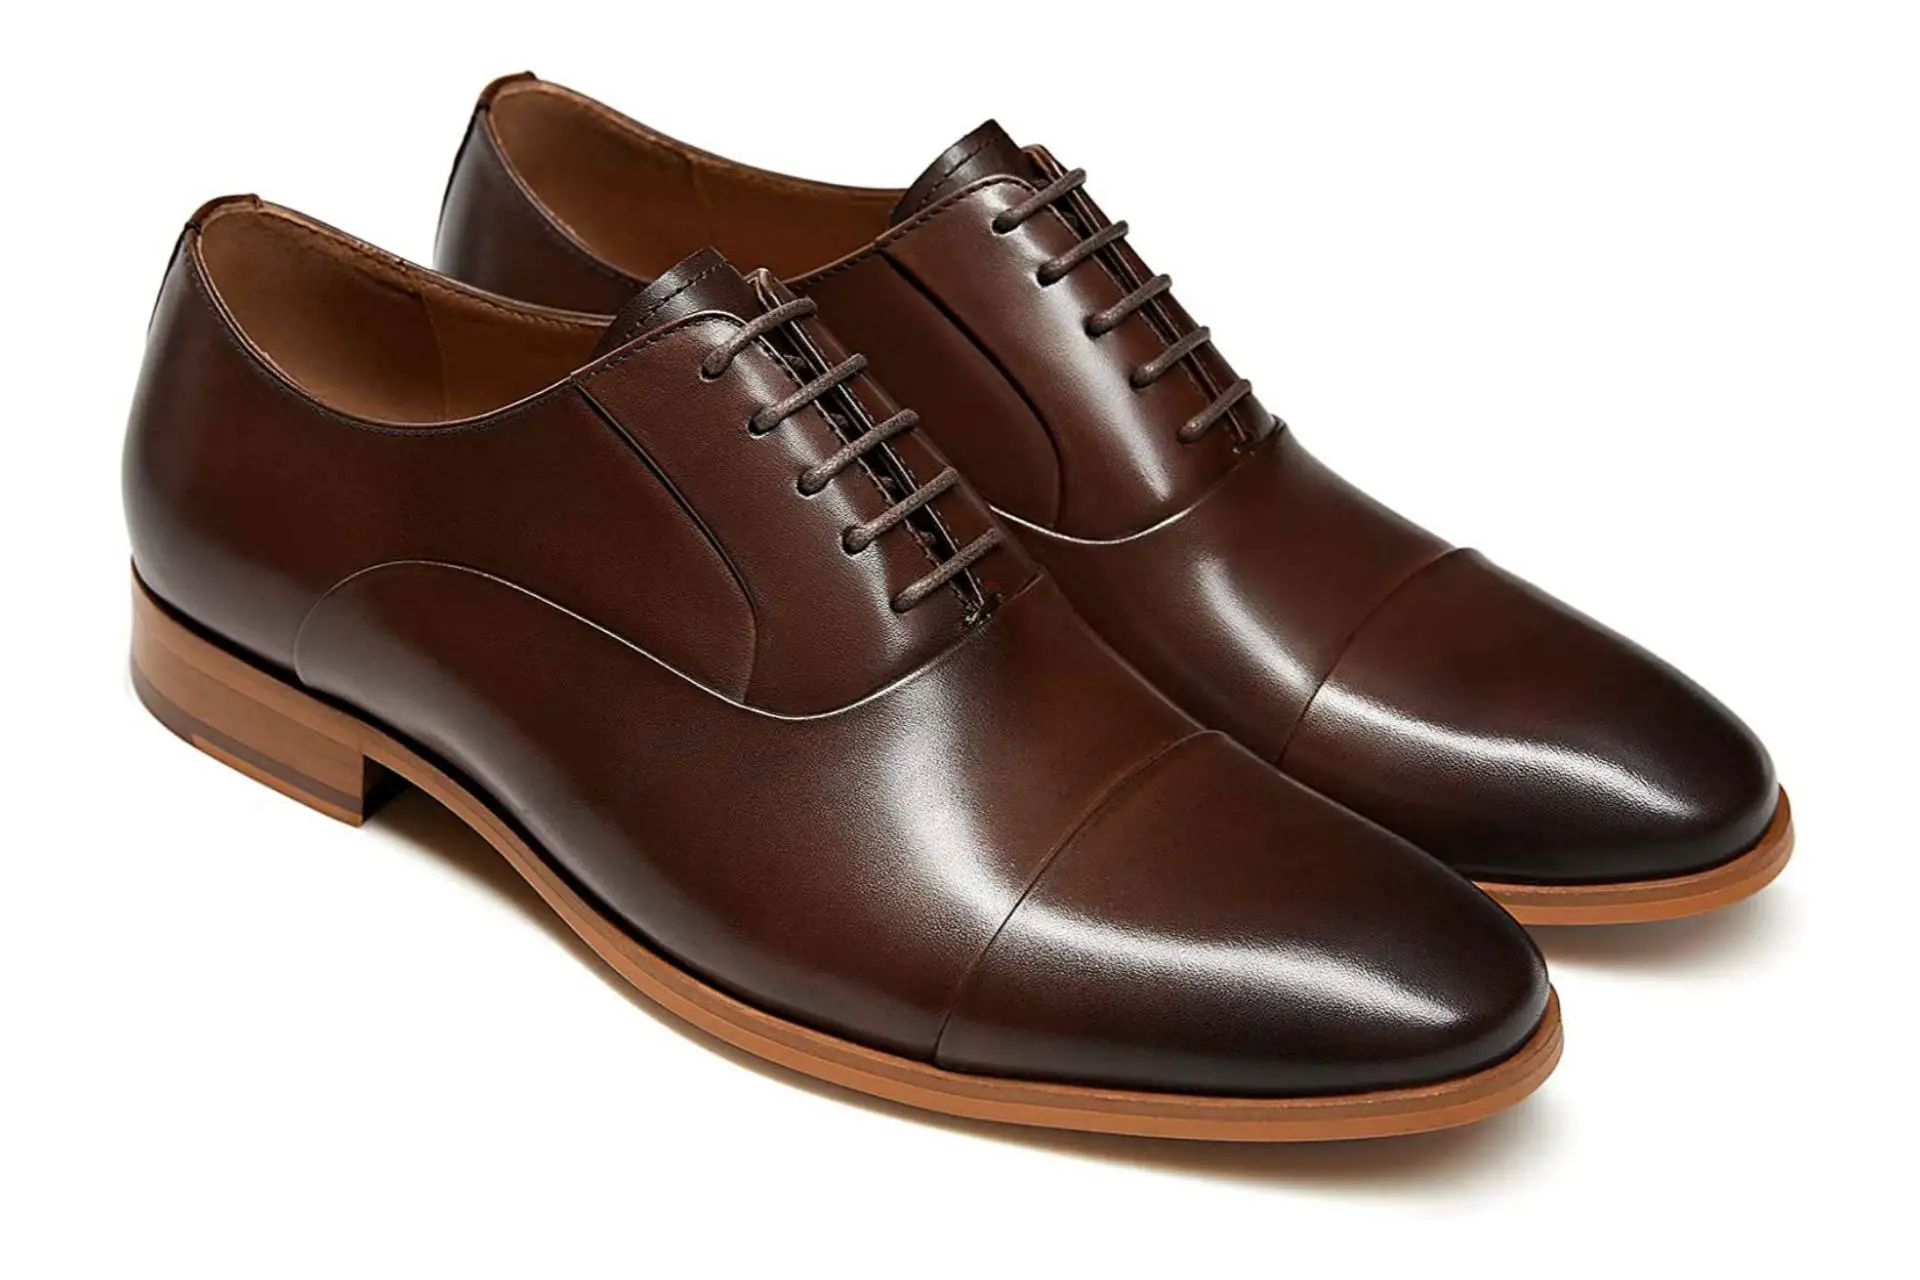 Best men's office oxford shoes